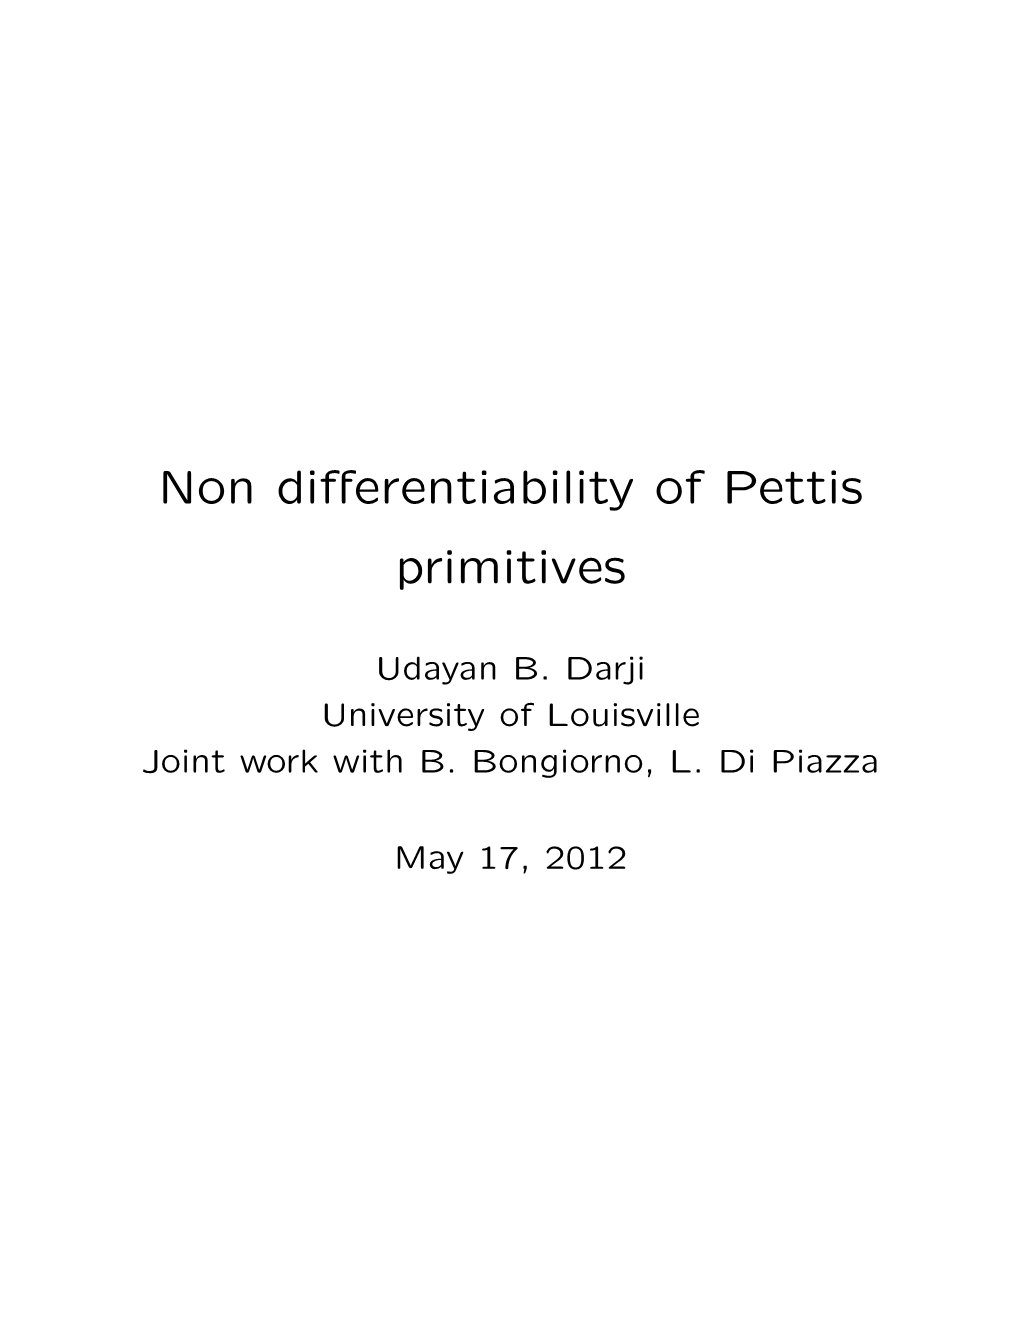 Non Differentiability of Pettis Primitives